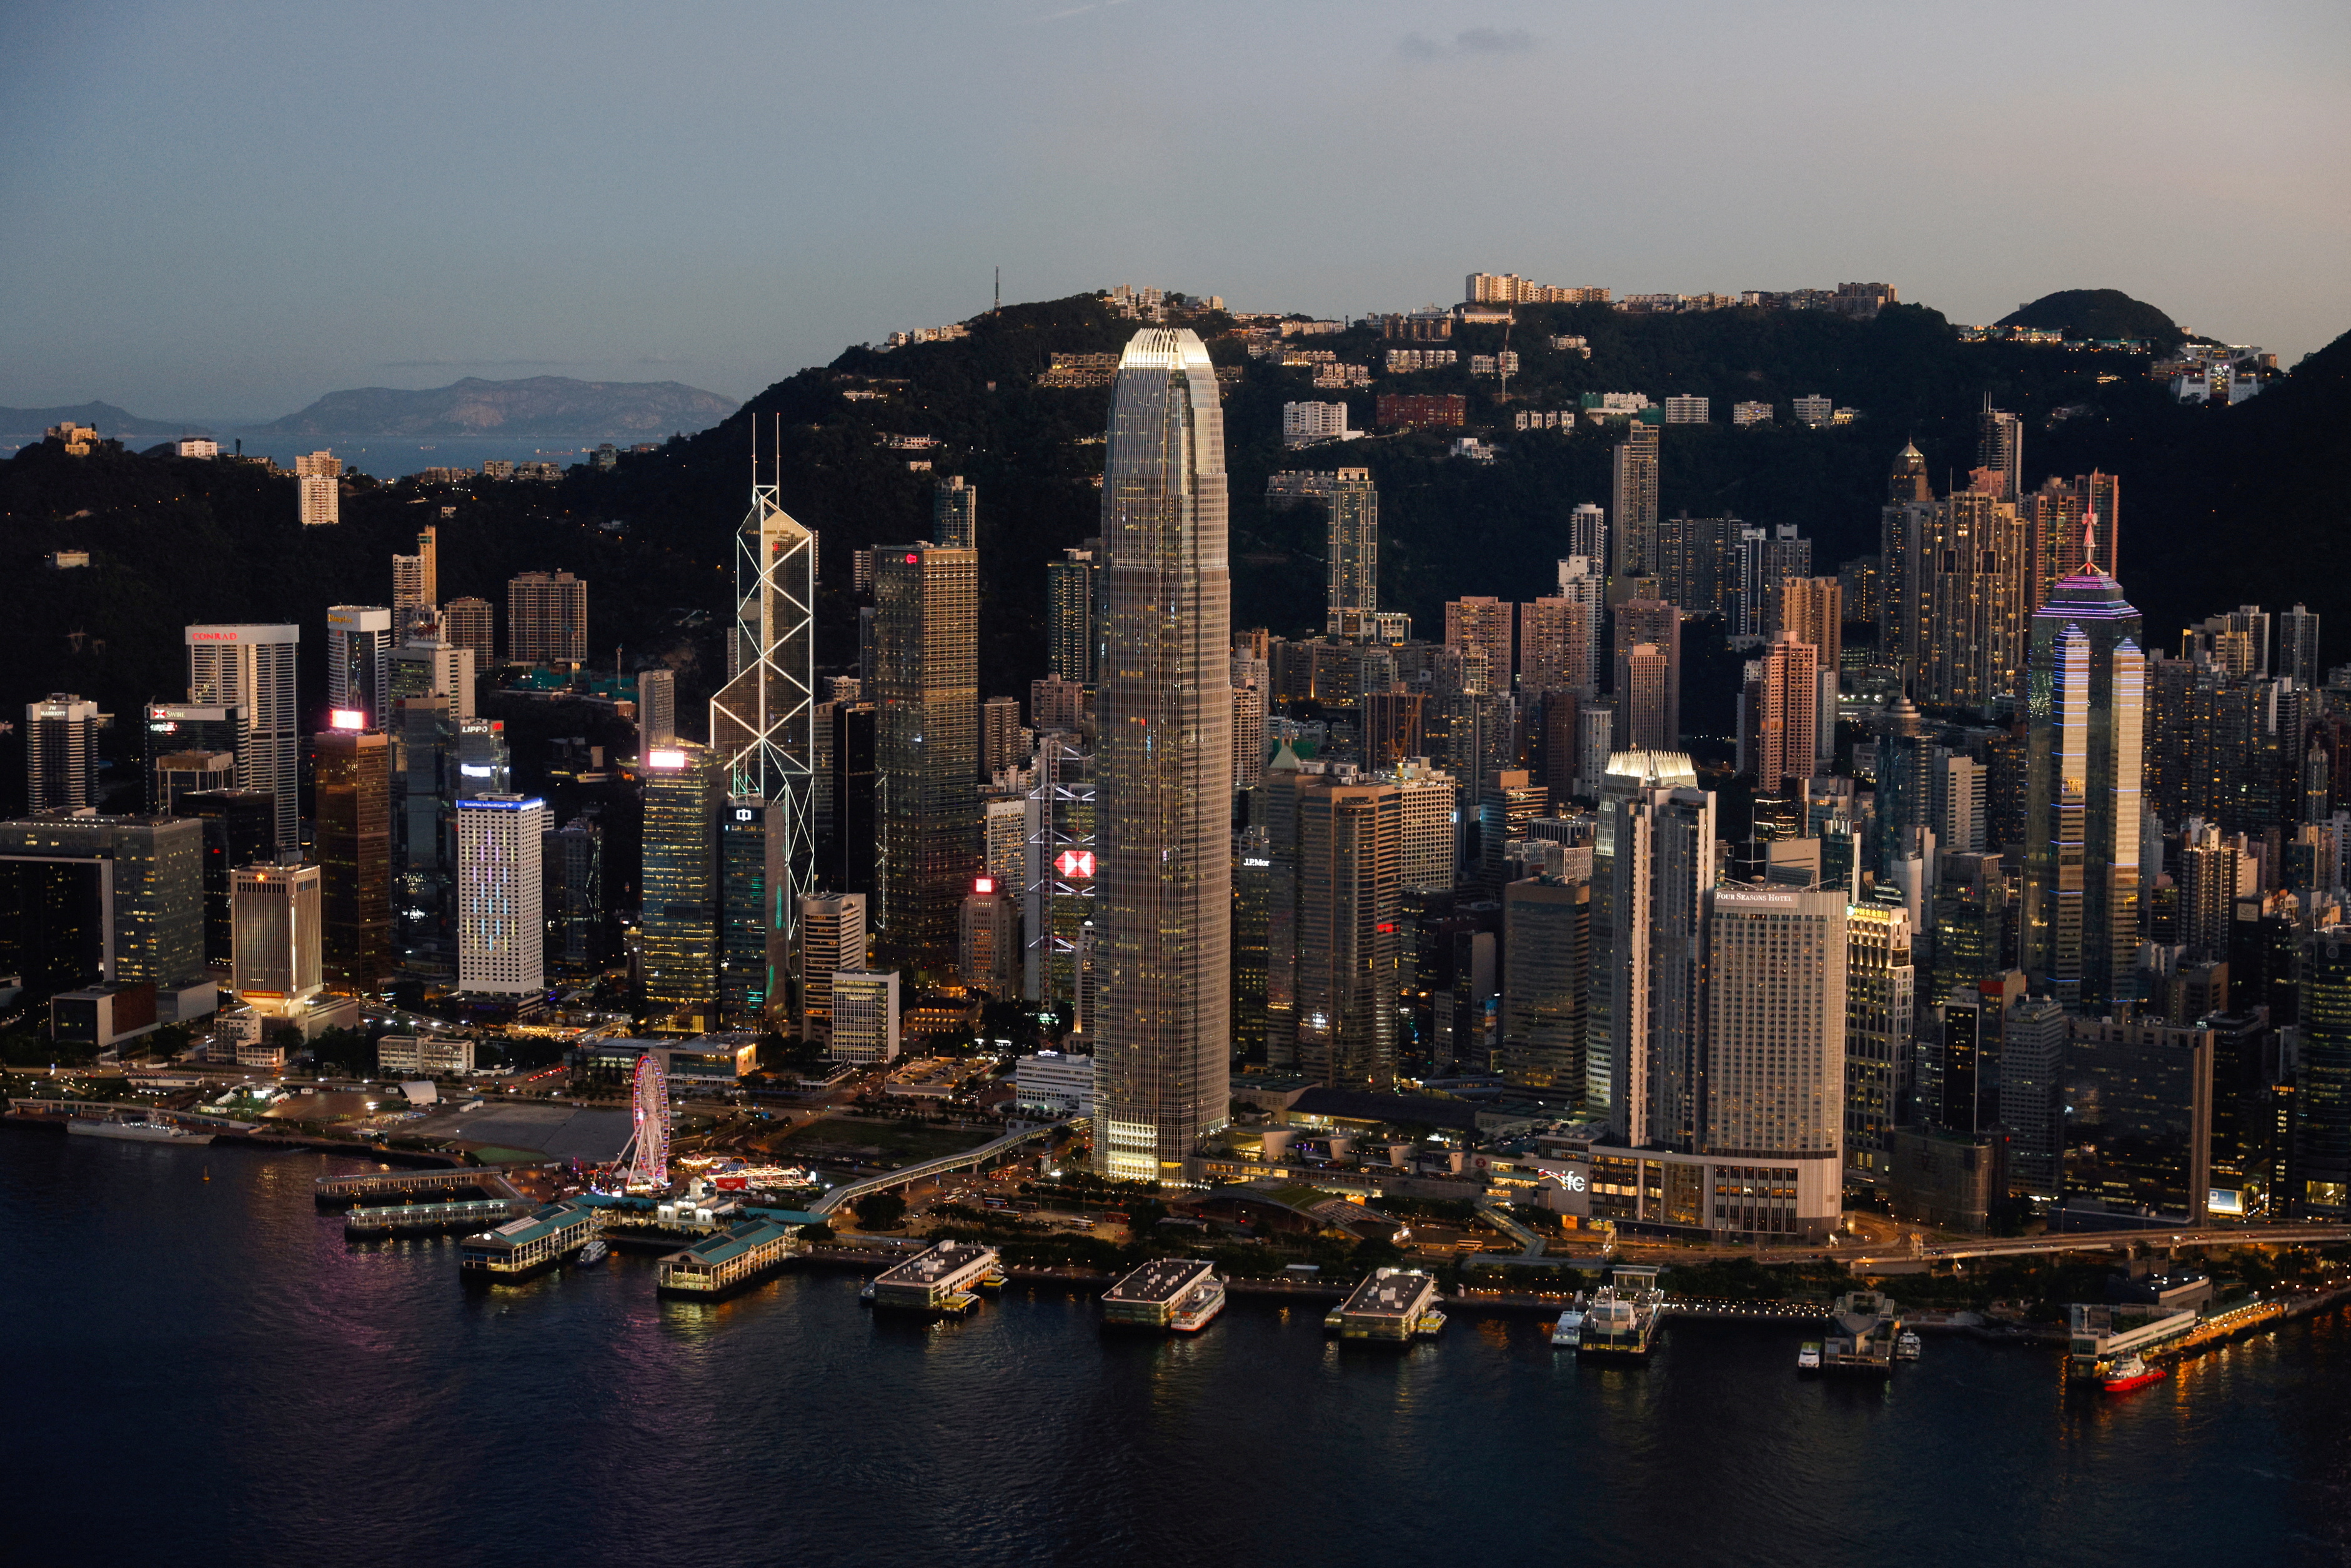 Hong Kong, China (REUTERS)